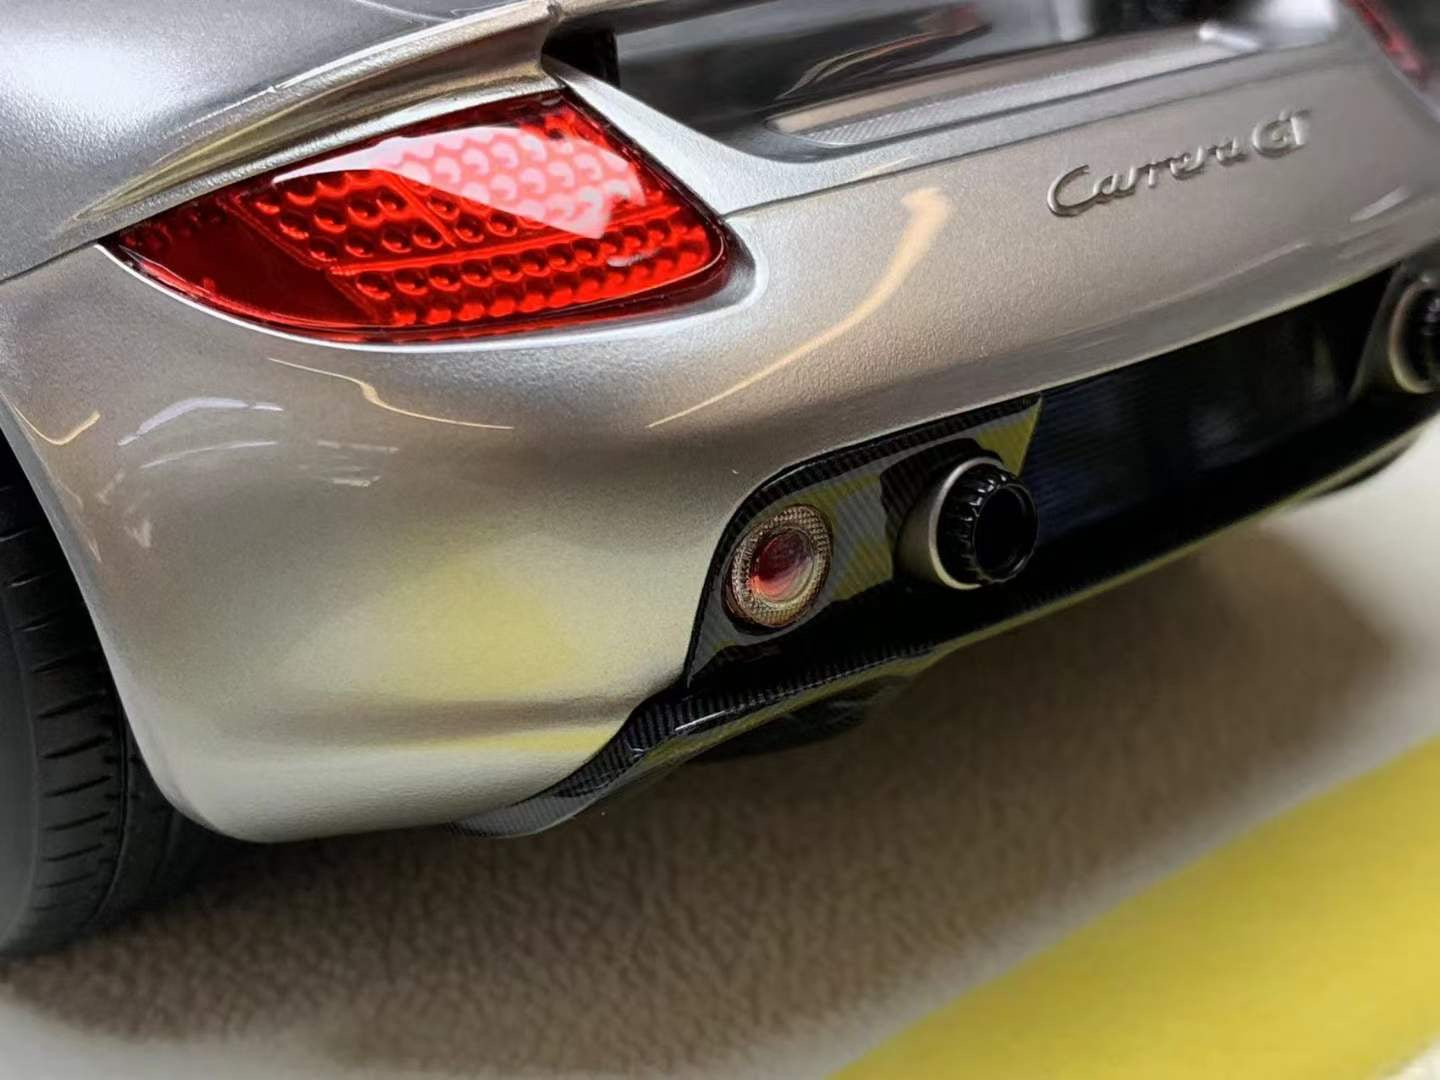 MakeUp Models Carrera GT 1/18